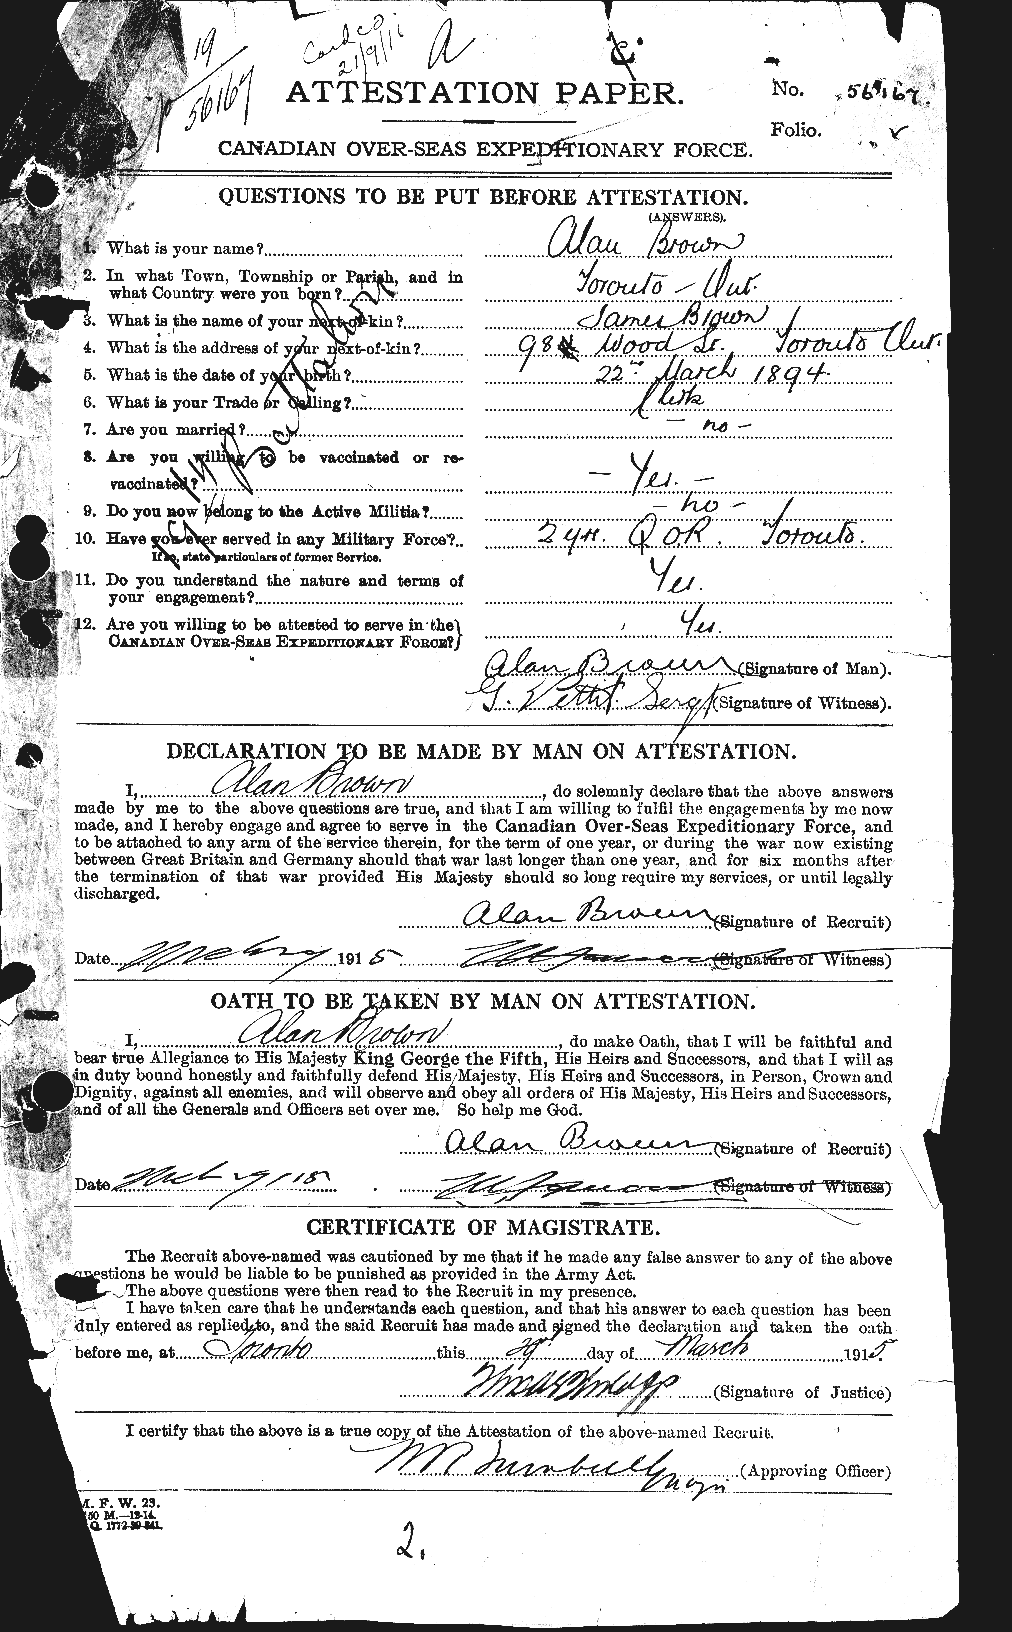 Dossiers du Personnel de la Première Guerre mondiale - CEC 266865a